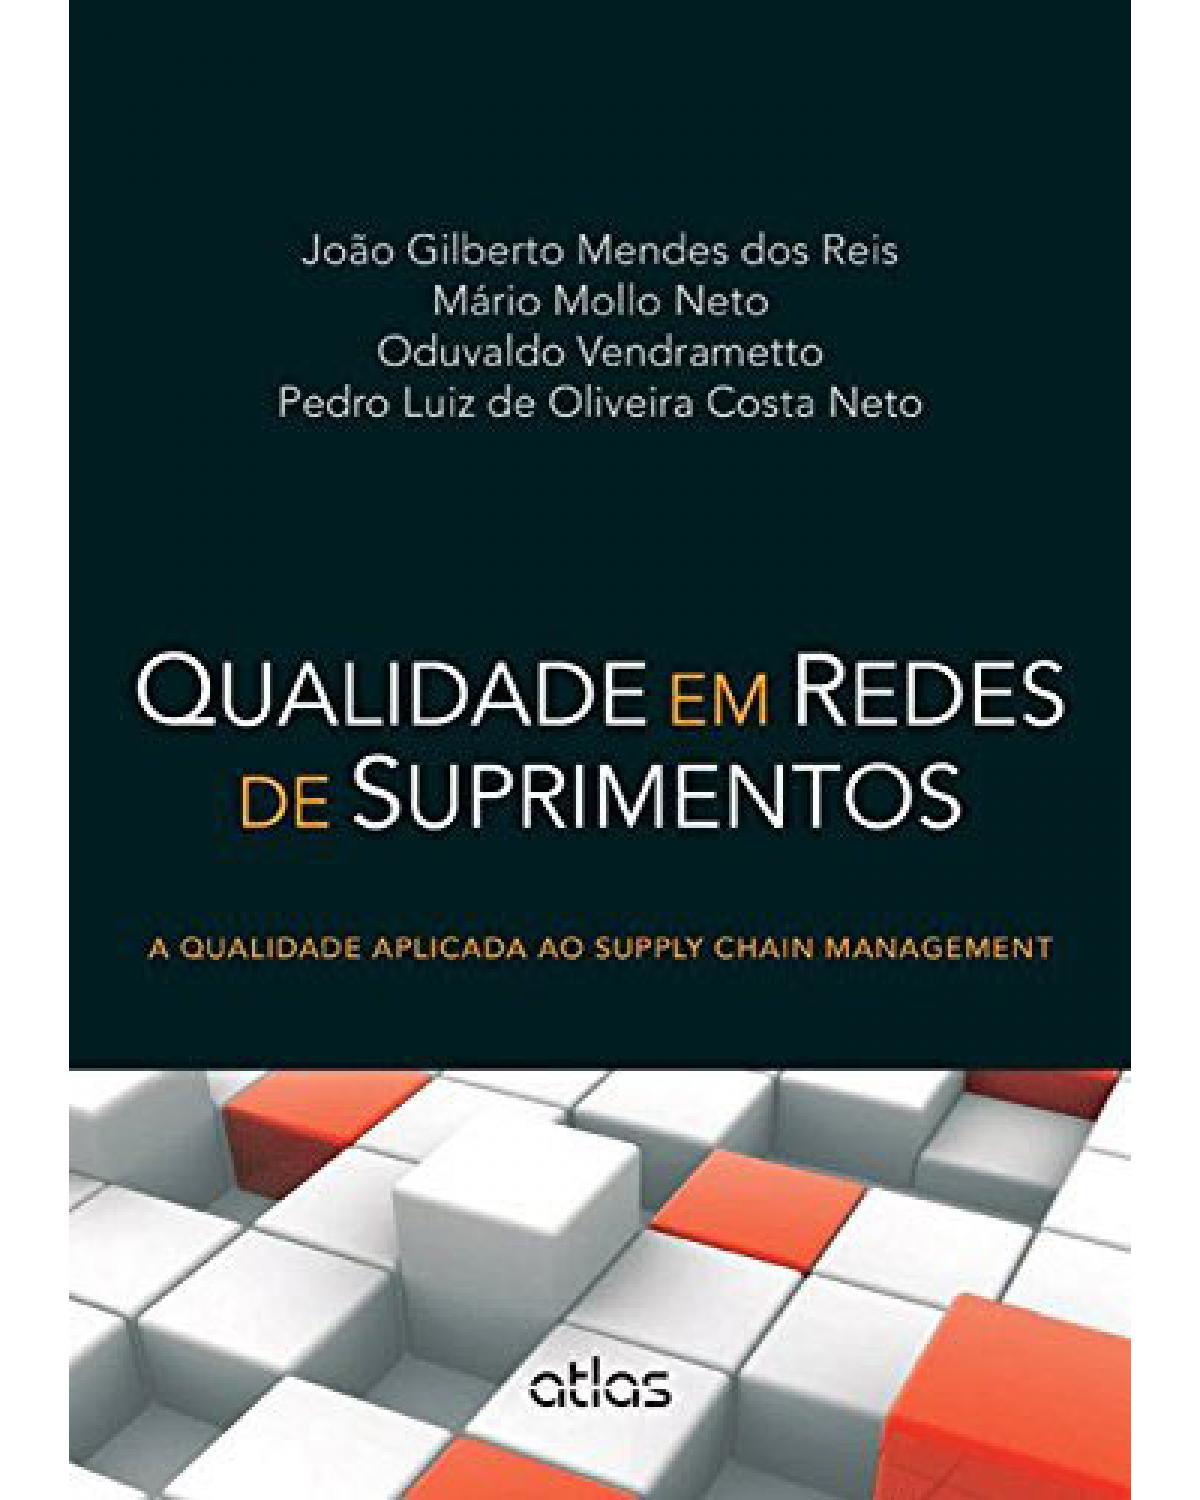 Qualidade em redes de suprimentos - A qualidade aplicada ao supply chain management - 1ª Edição | 2015